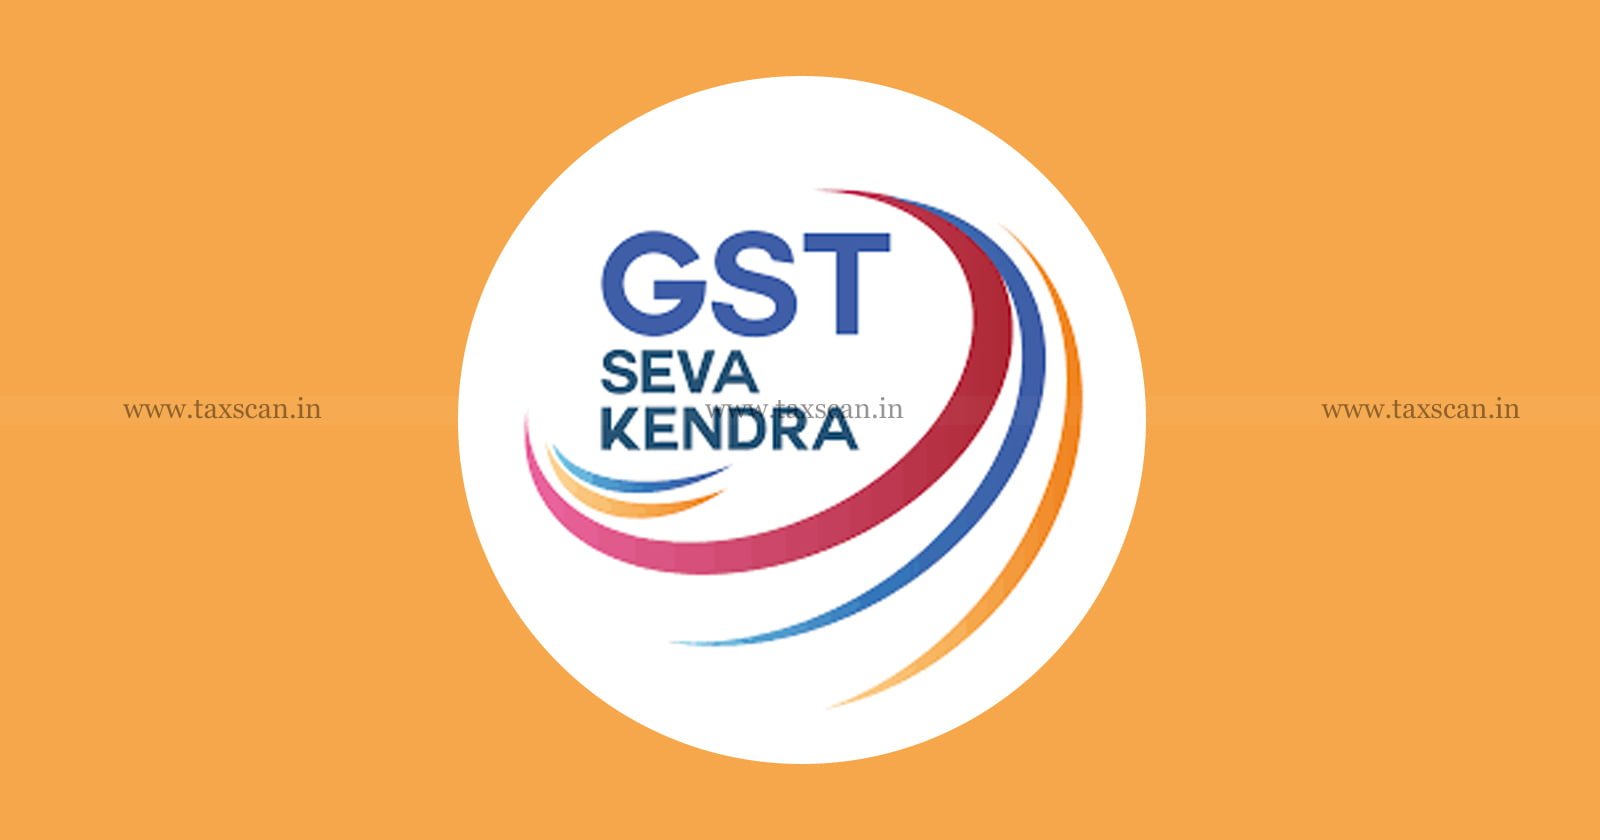 GST - GST Seva Kendras - Tax Payment - Tax - GST Commissioner - MSMEs - taxscan